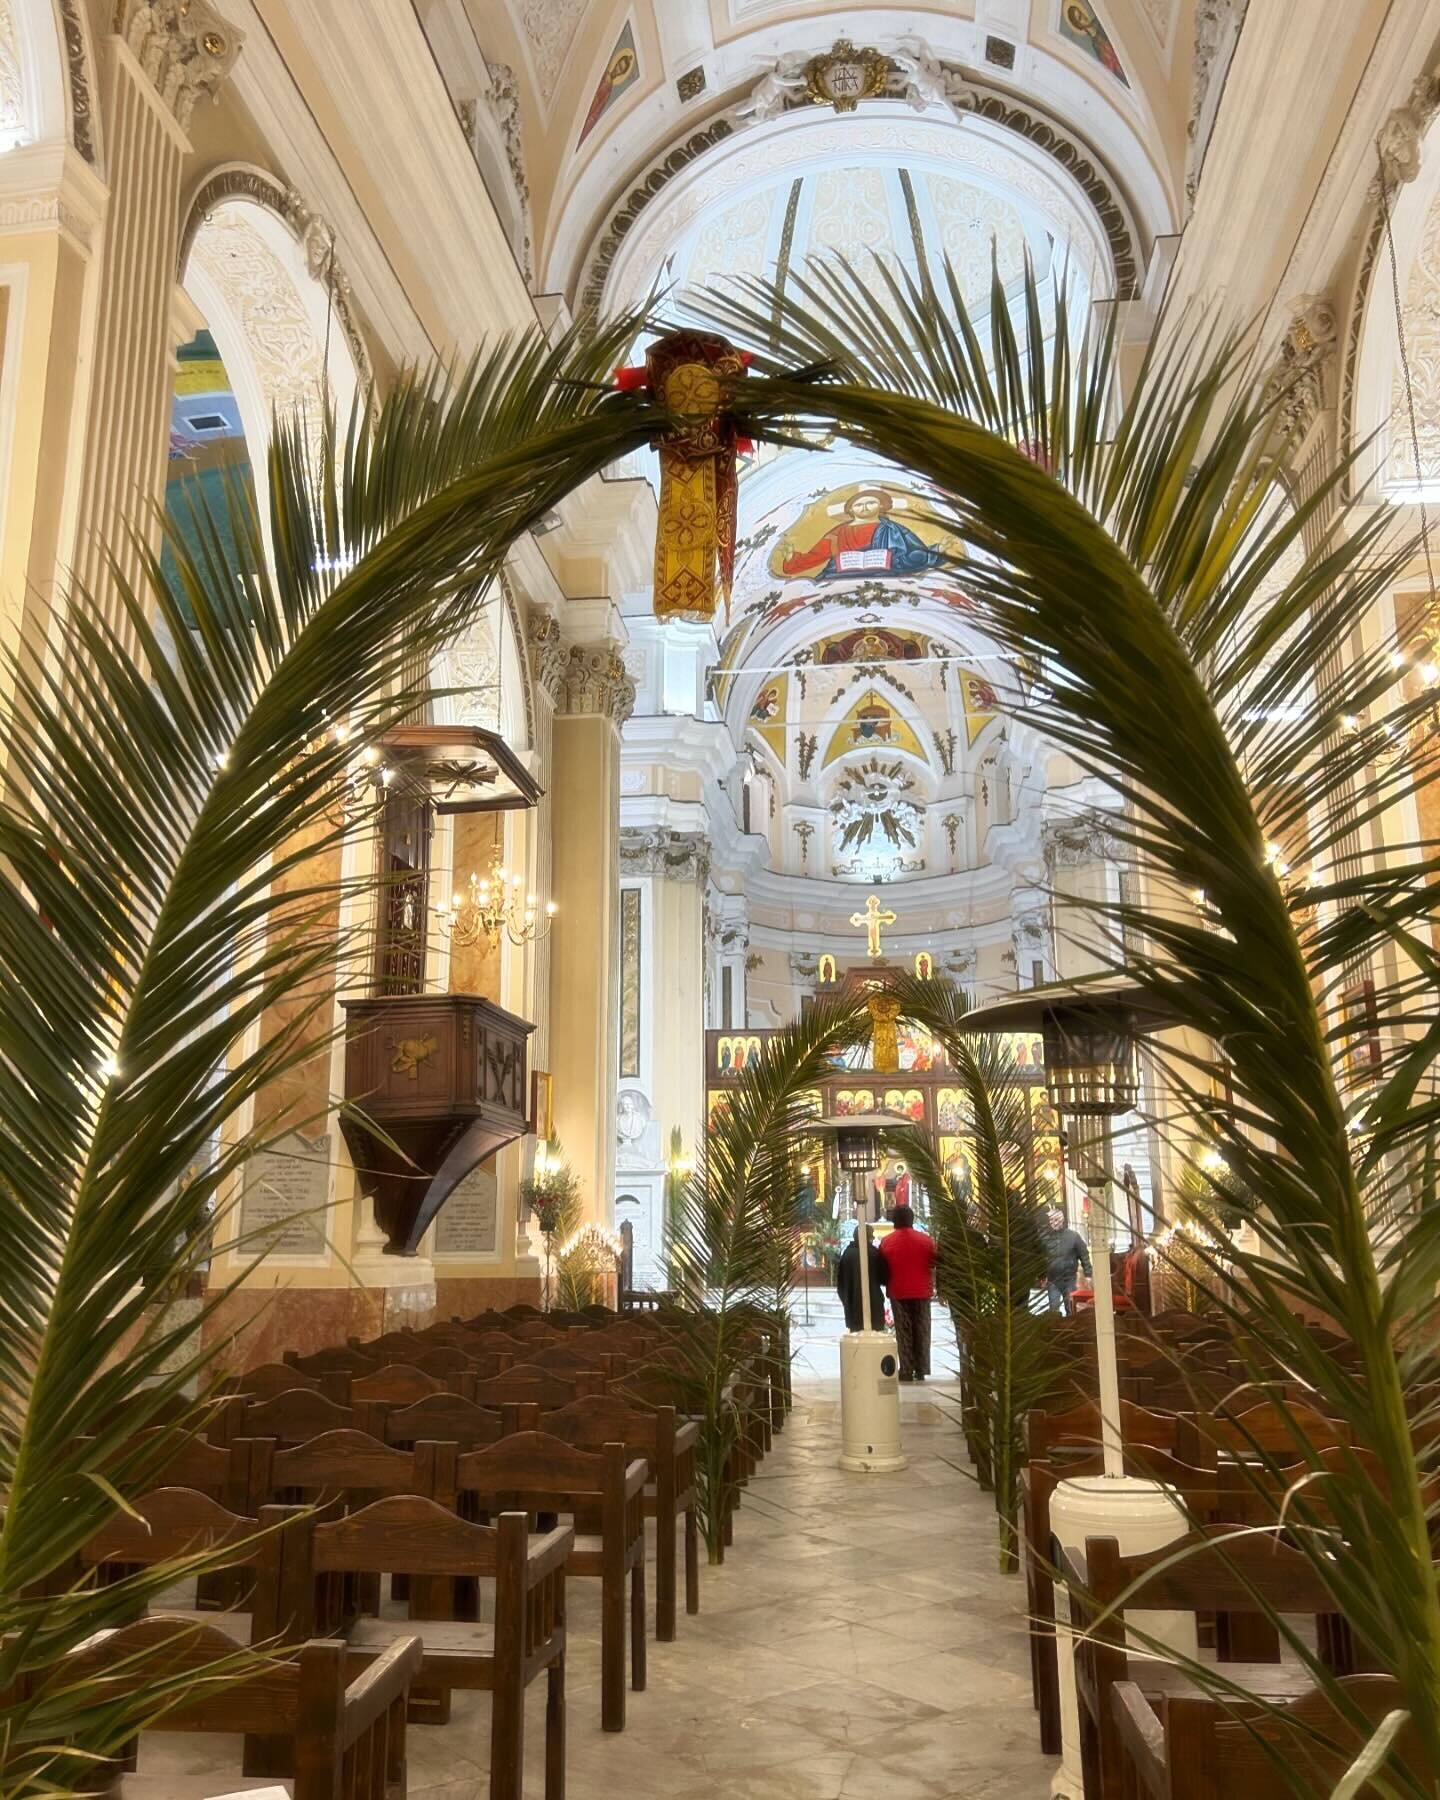 Buona Pasqua 🕊️ Happy Easter and Peace to all. 🕊️

Palm Sunday 3.24.24 Chiesa di rito bizantino Maria Santissima Assunta in Palazzo Adriano, Sicily

#ASicilianExperience #PalazzoAdriano #Sicily #MariaSantissimaAssunta